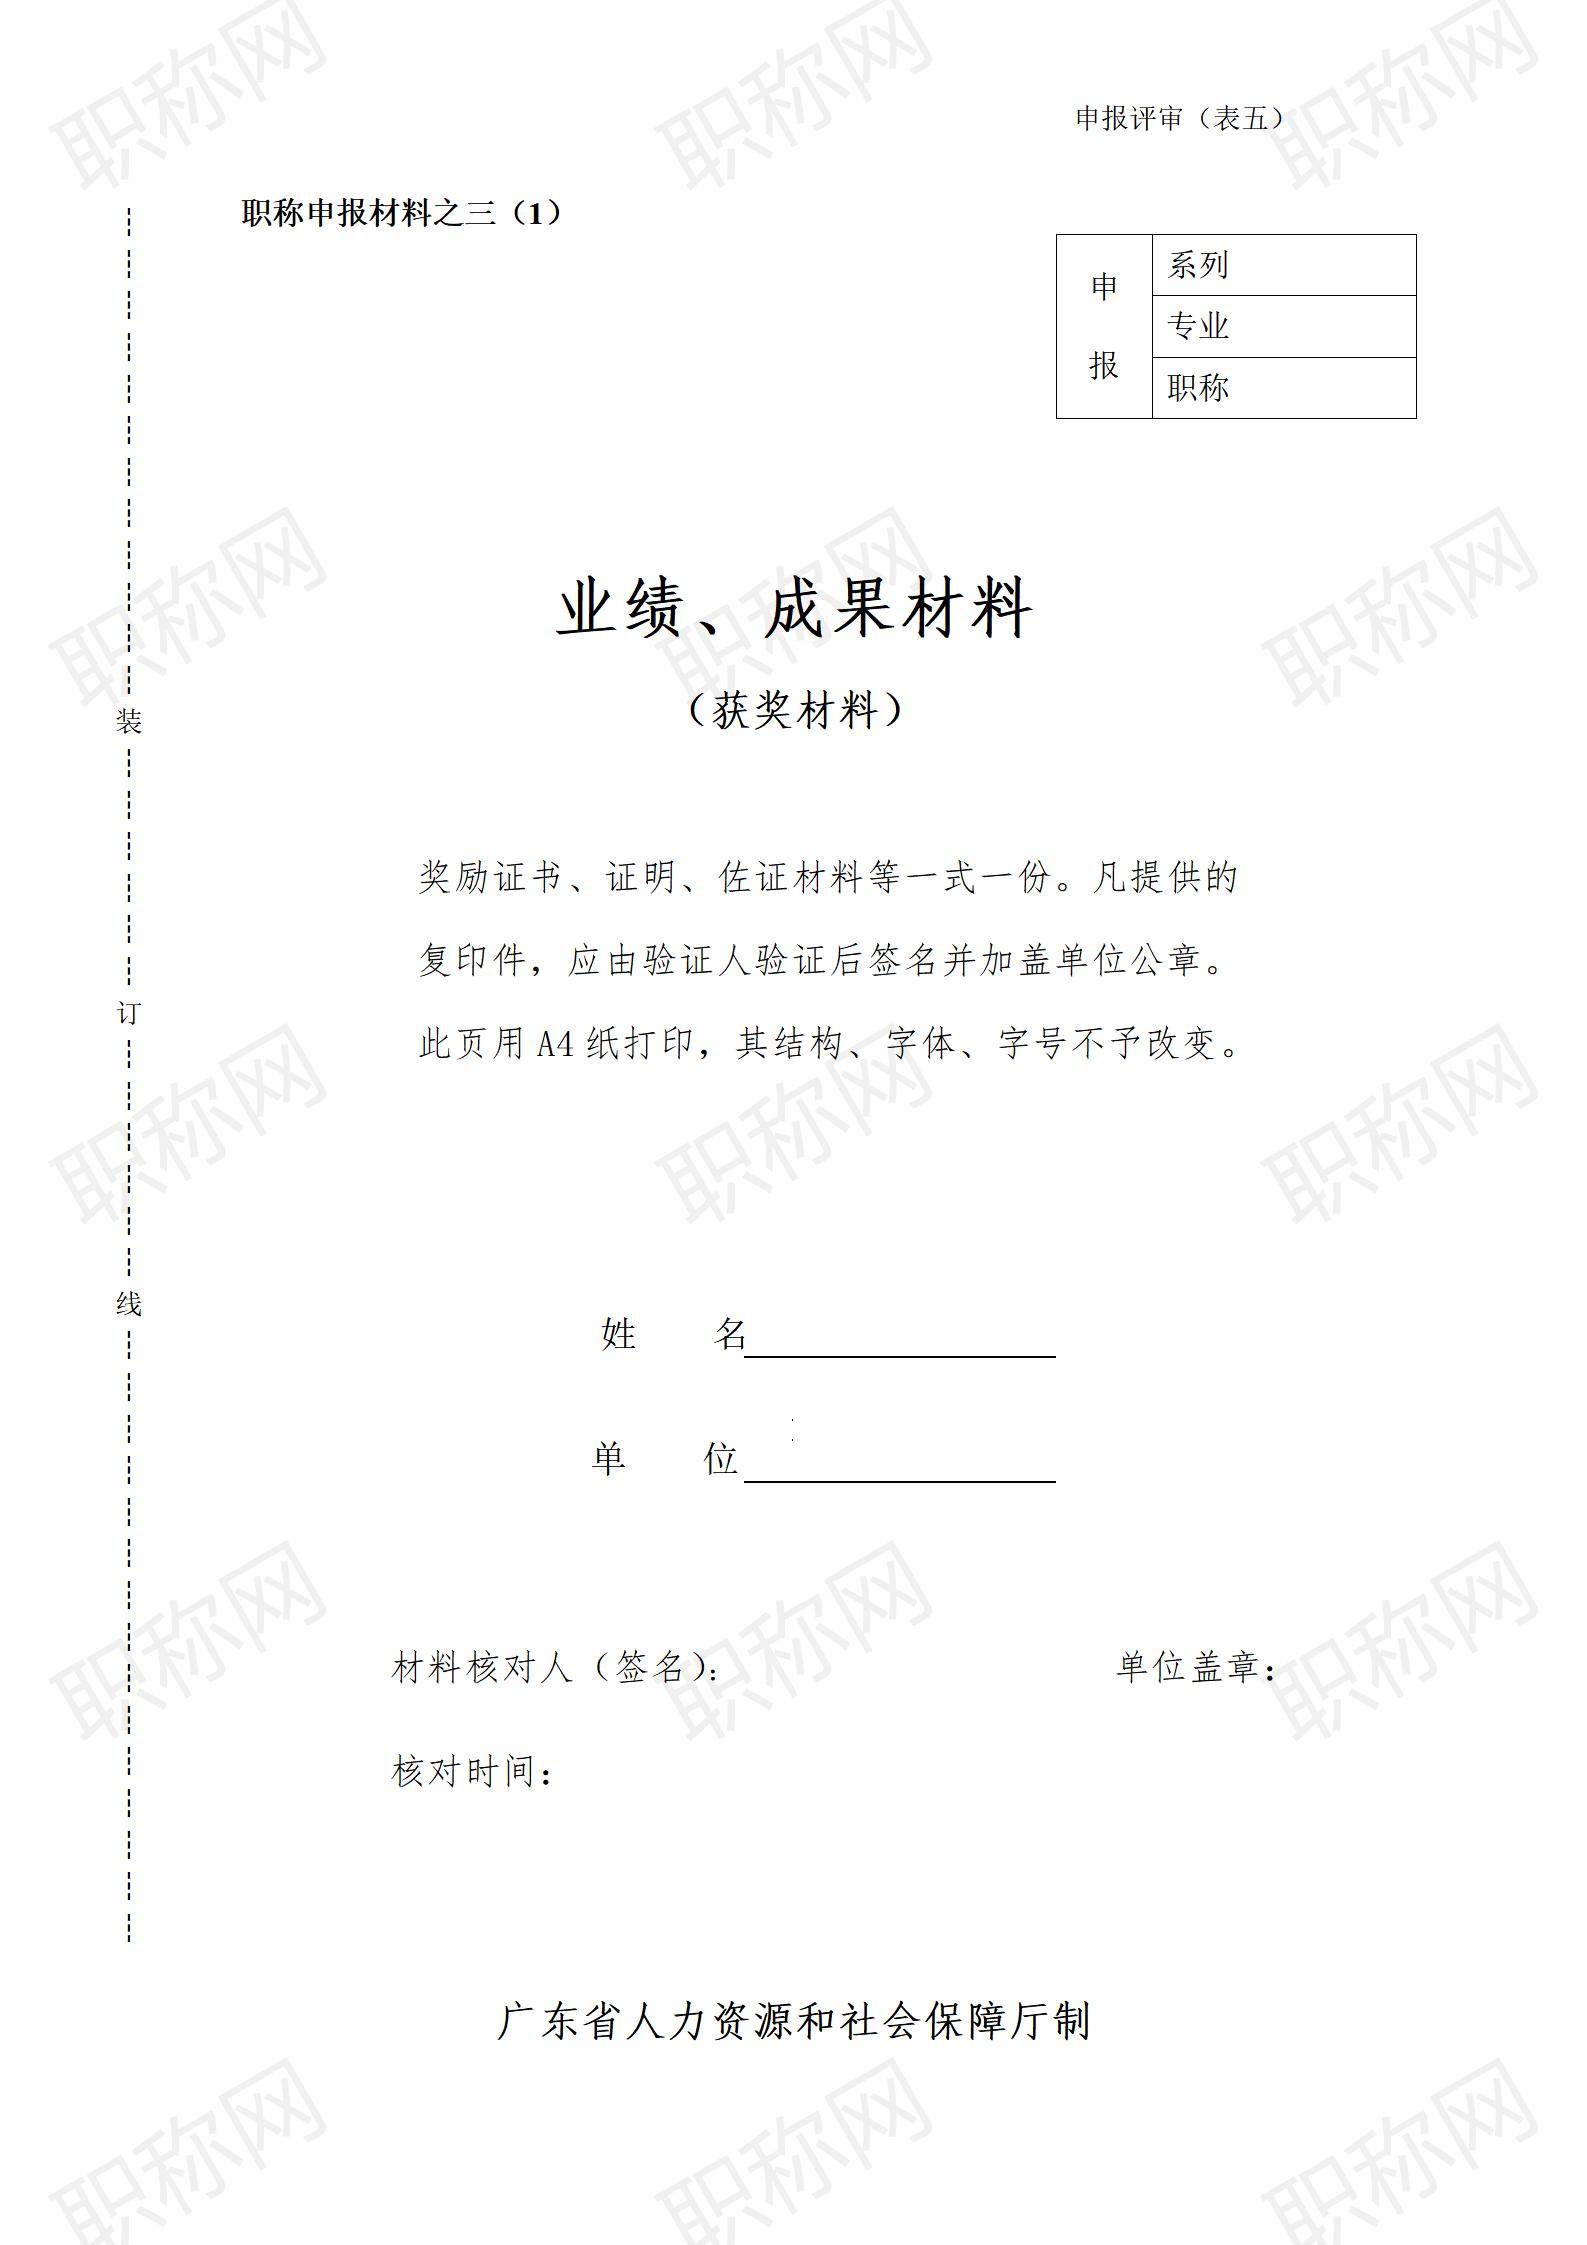 广东省职称评审业绩及成果材料填写表_01.jpg